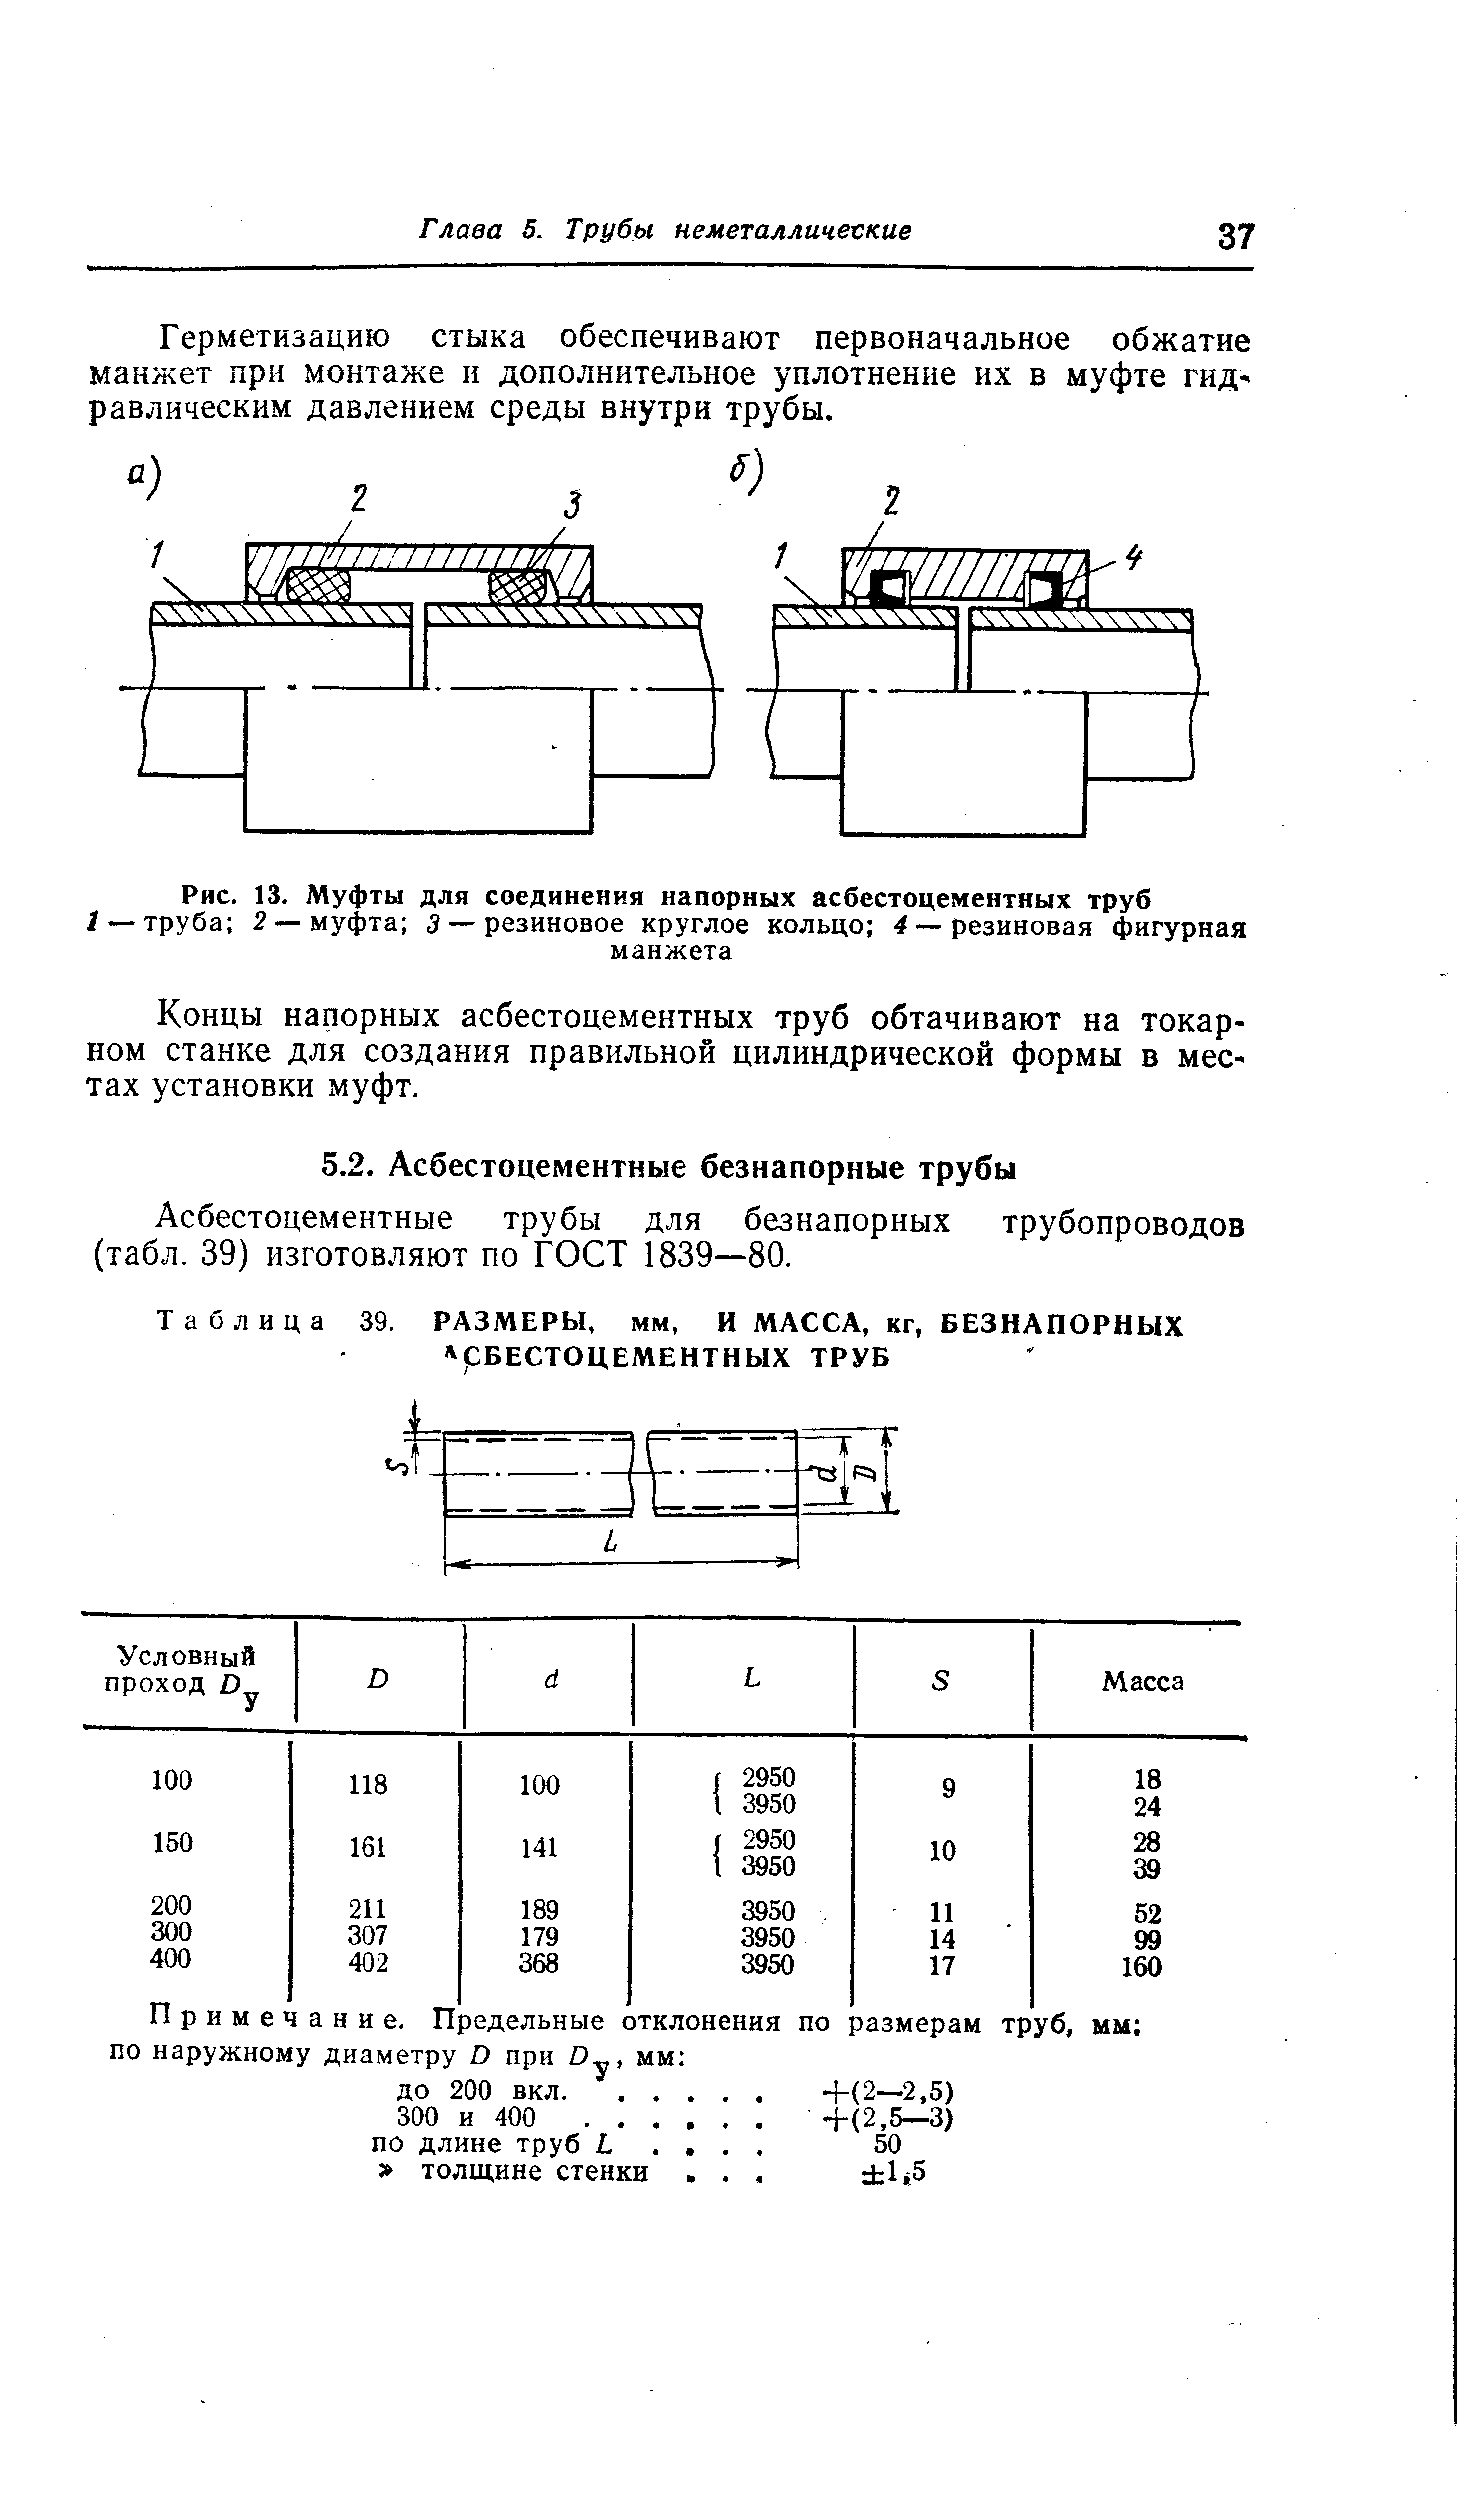 Асбестоцементные трубы для безнапорных трубопроводов (табл. 39) изготовляют по ГОСТ 1839—80.